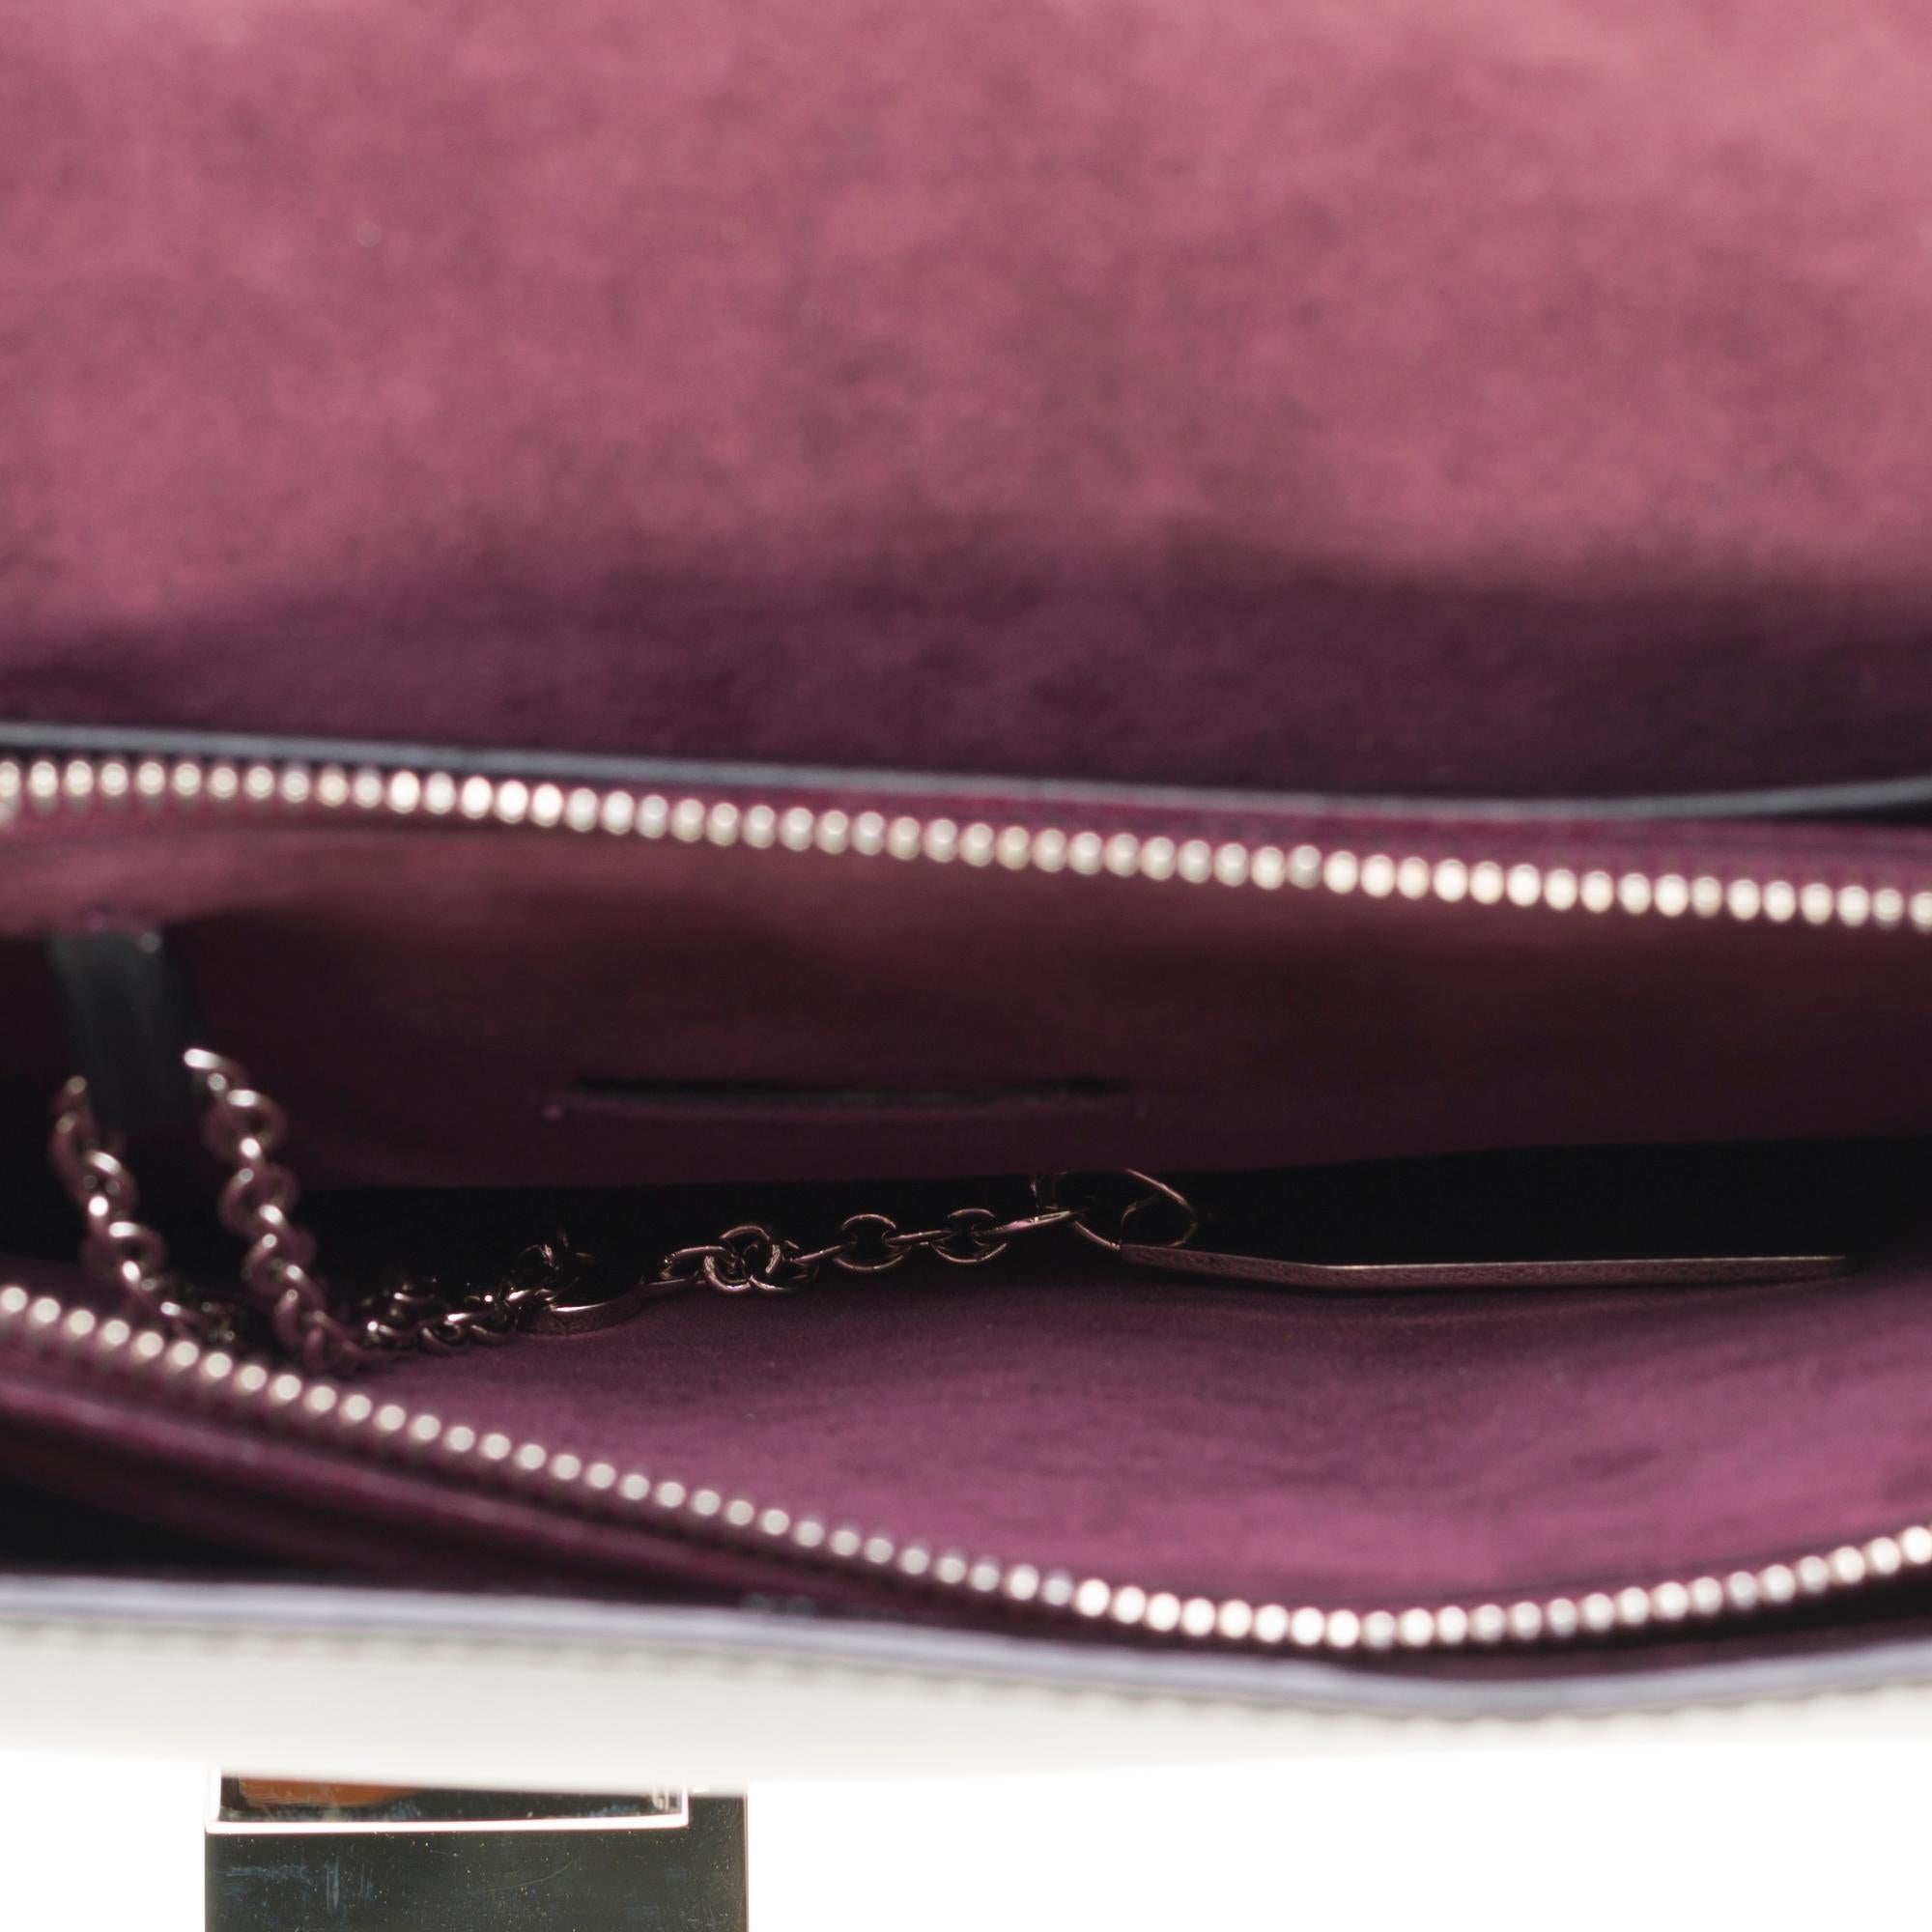 Amazing Cartier handbag/Clutch in black box leather, SHW 1